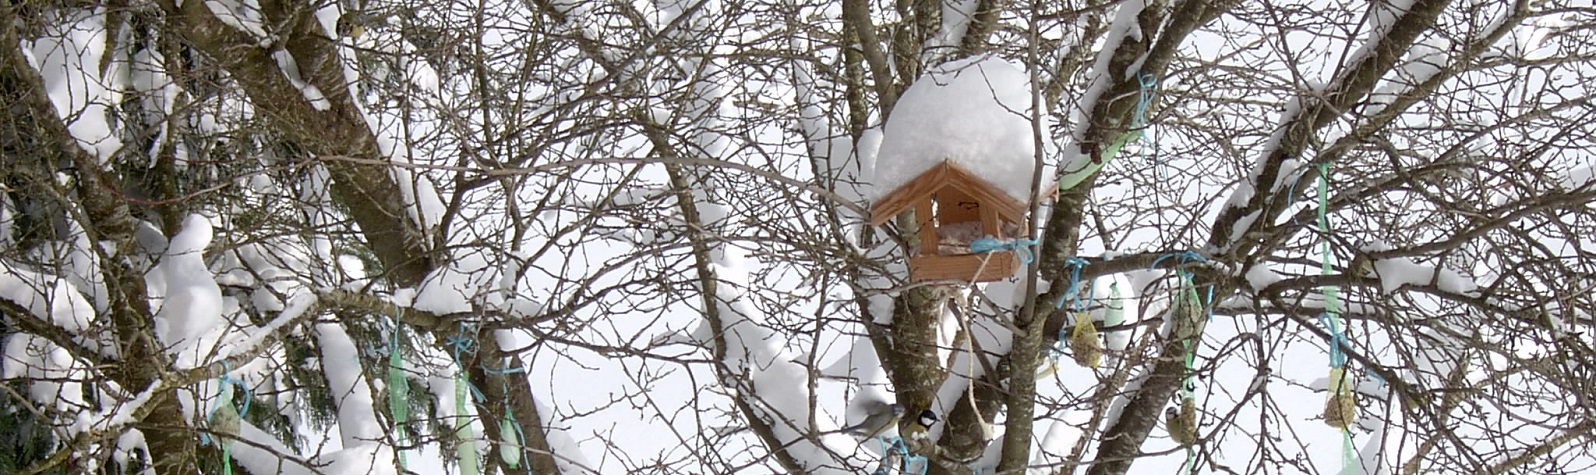 Vogelhaus im Winter - Slide 2